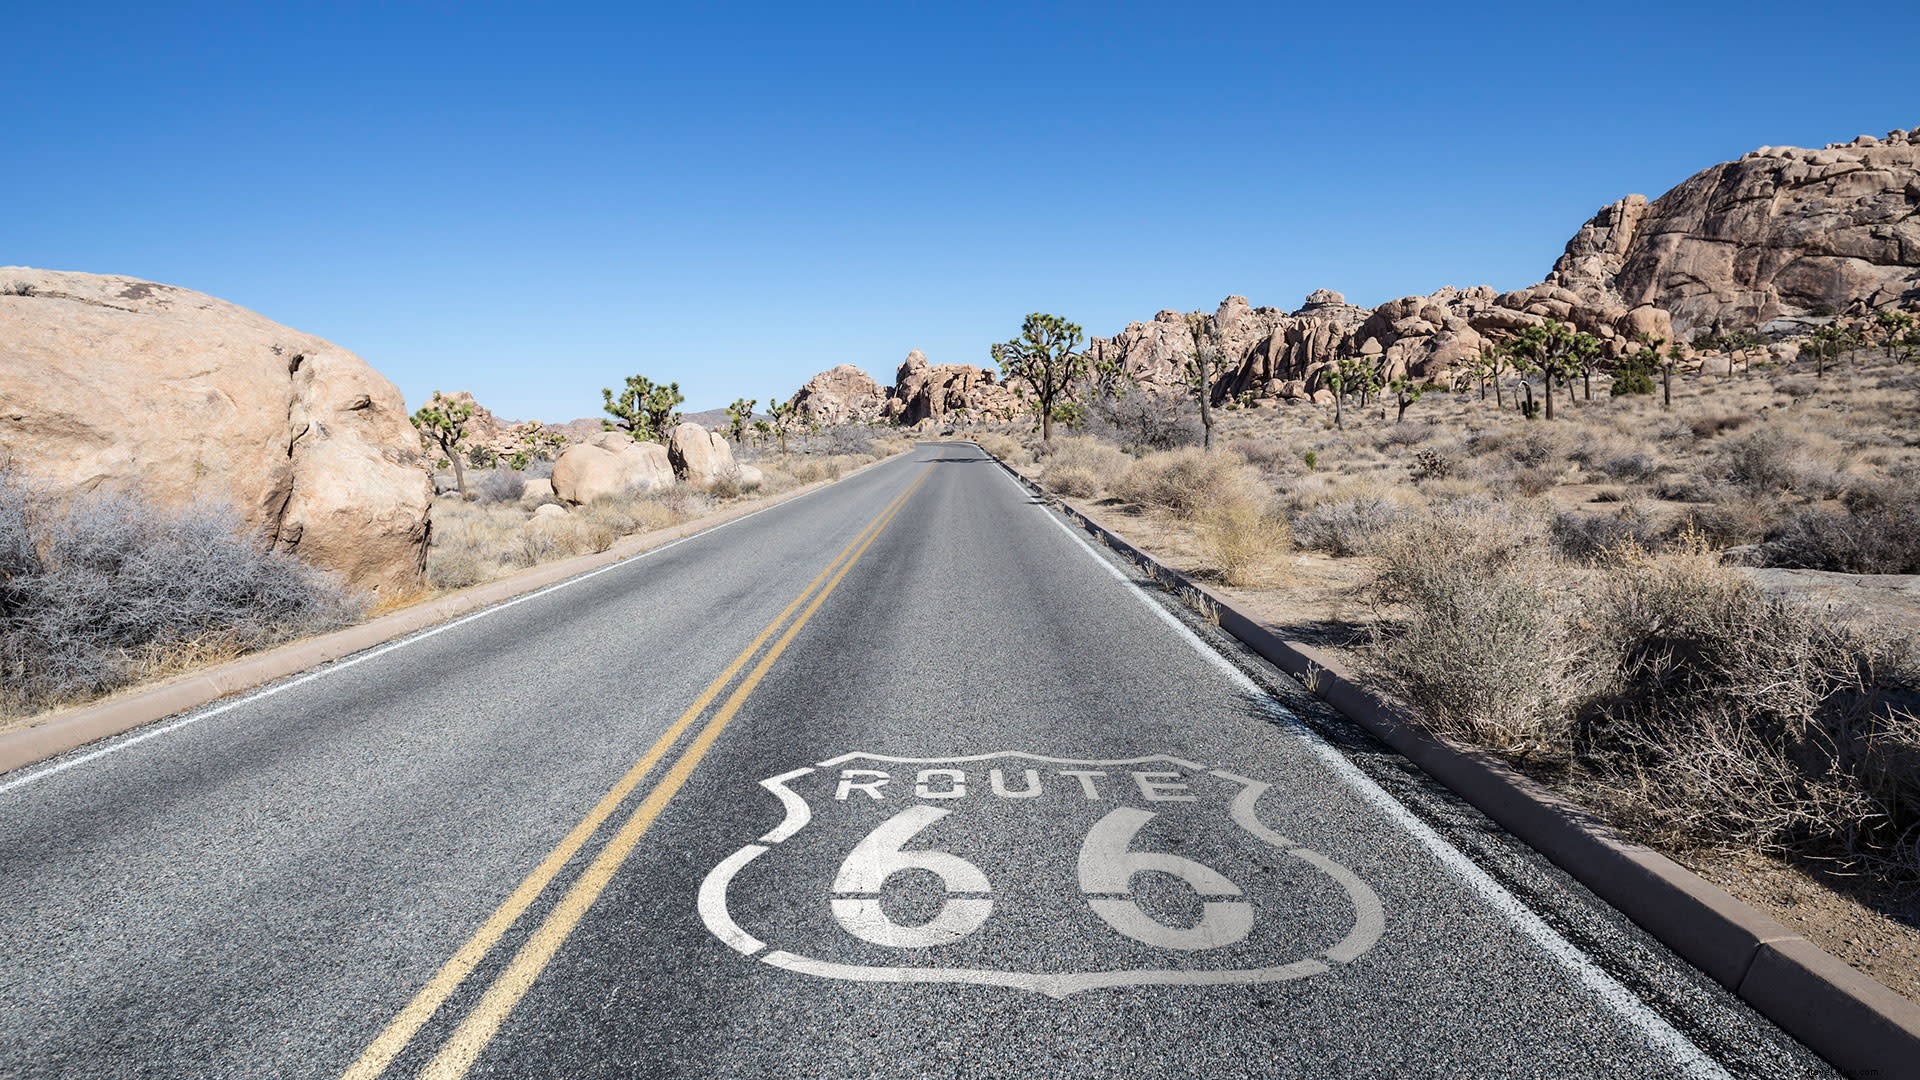 Itinerario del desierto:haz un viaje por la ruta 66 